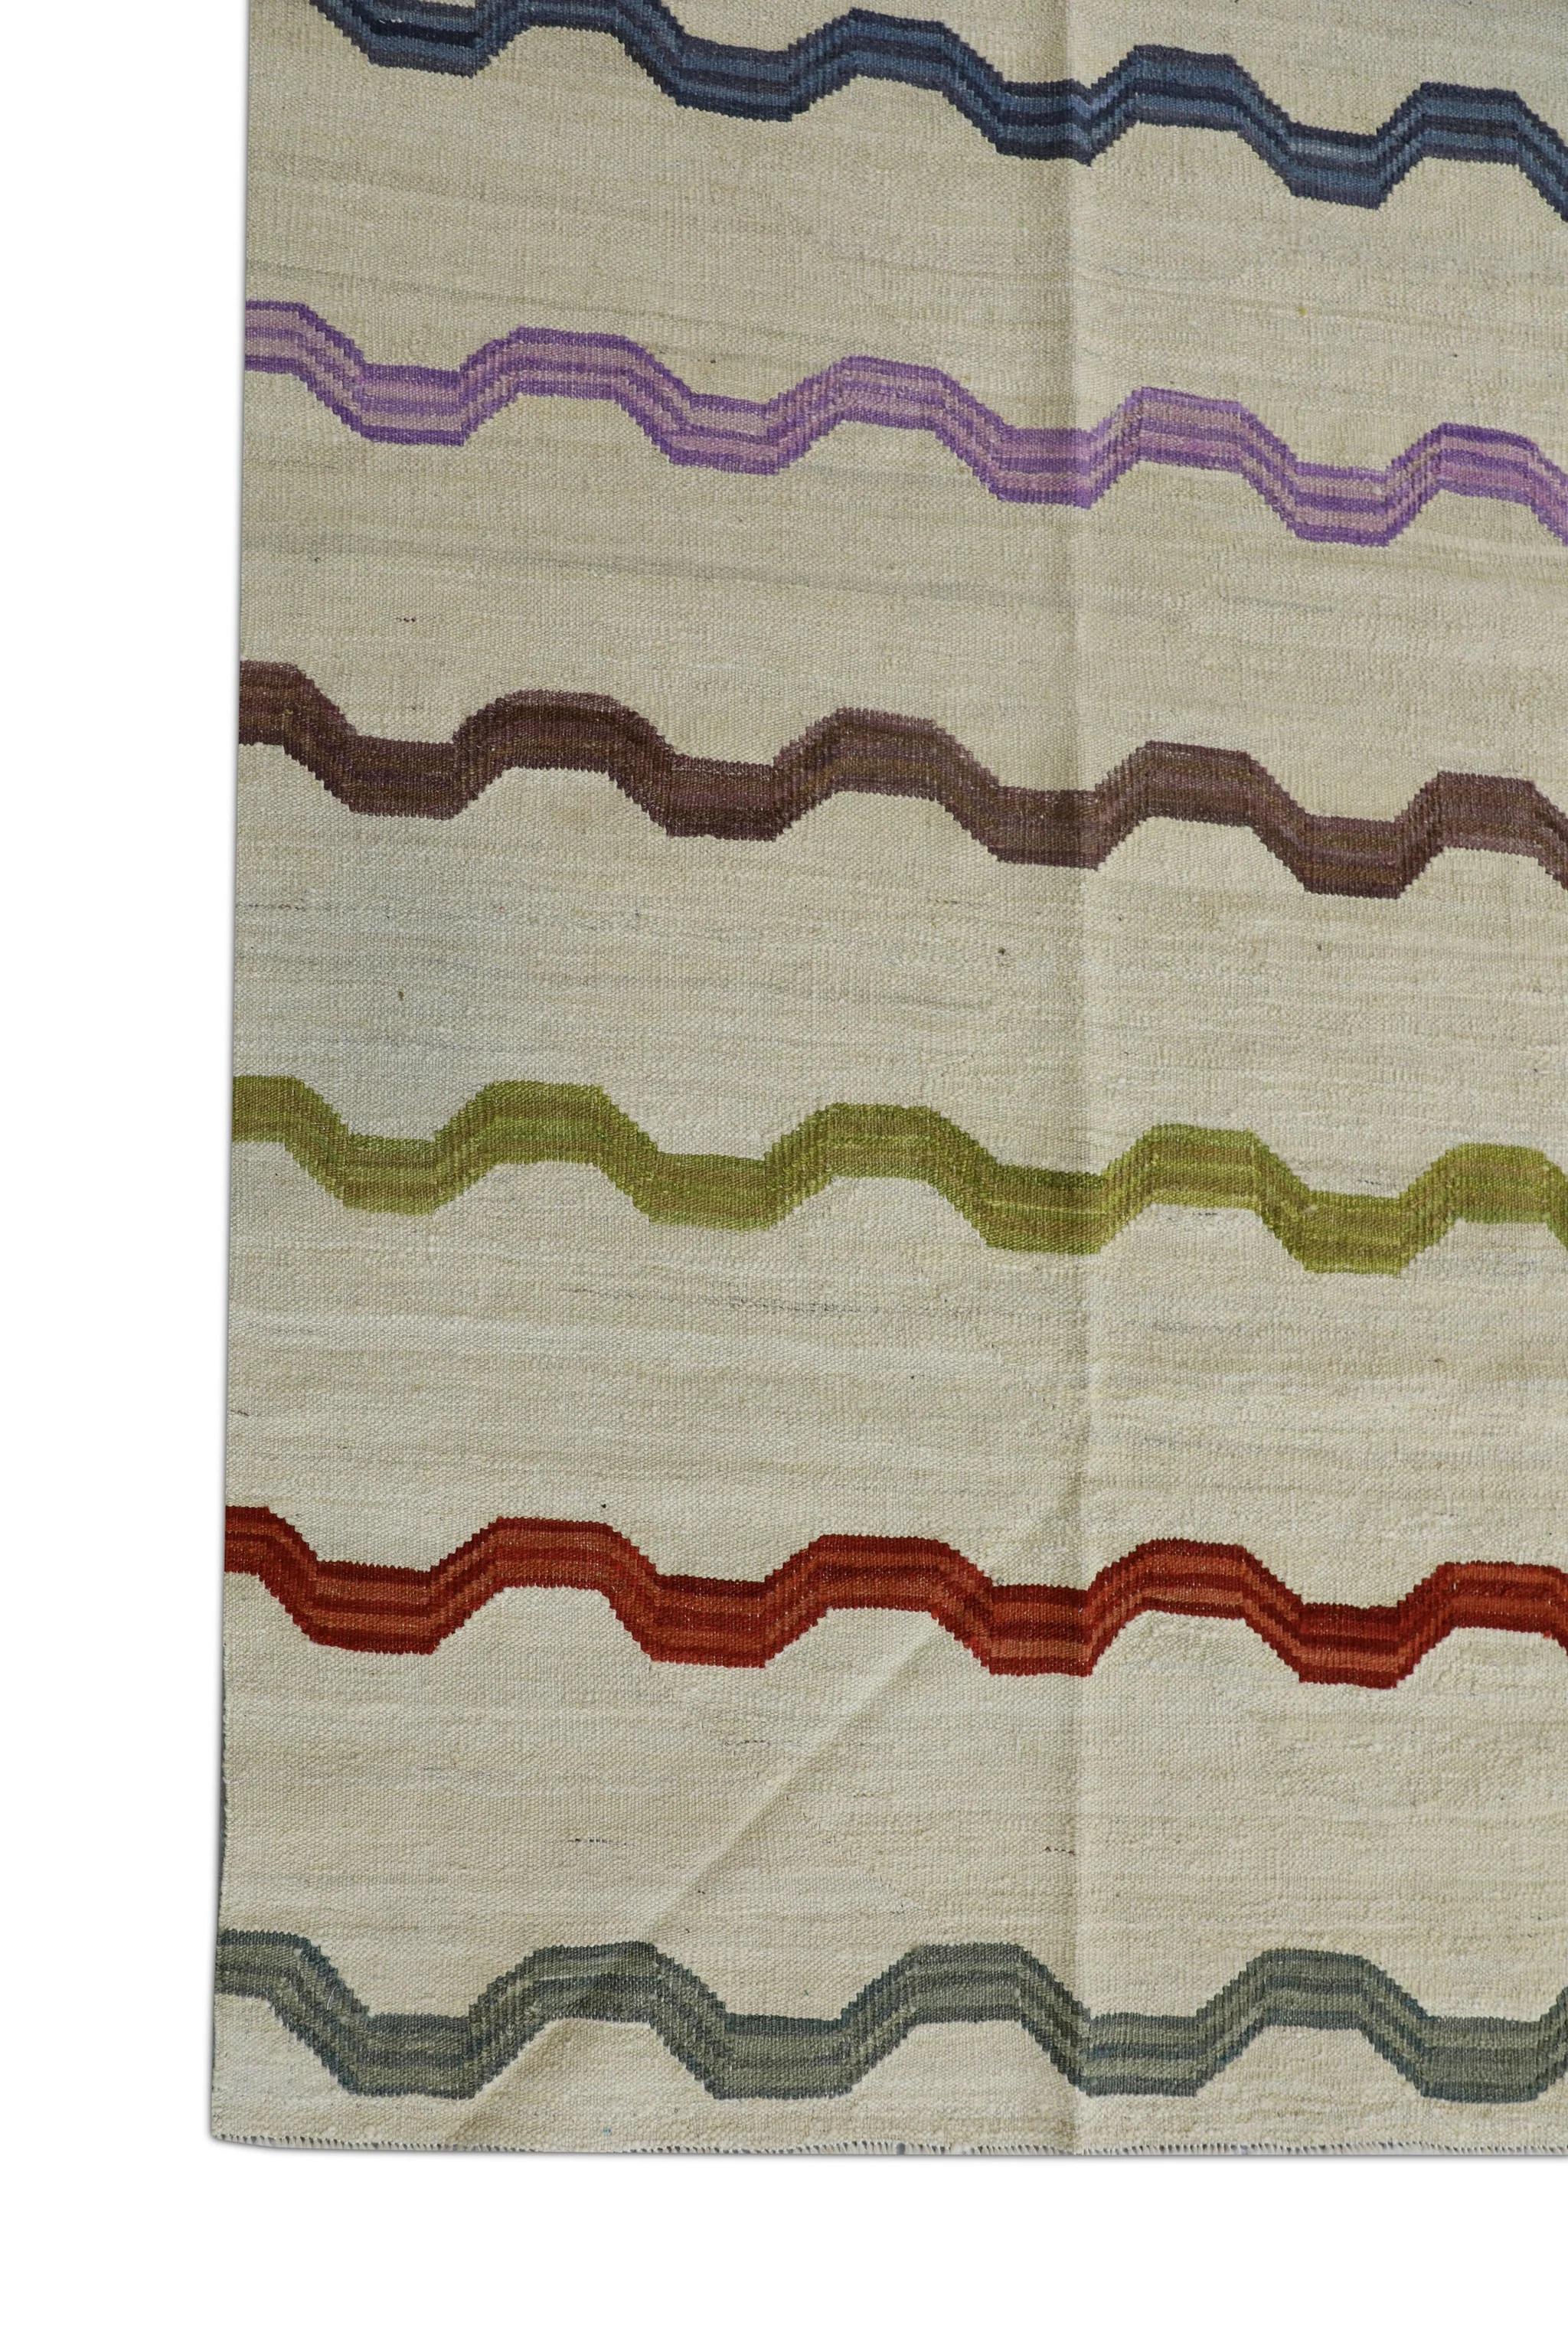 Turkish Beige Flatweave Handmade Wool Rug in Multicolor Striped Pattern 8'1